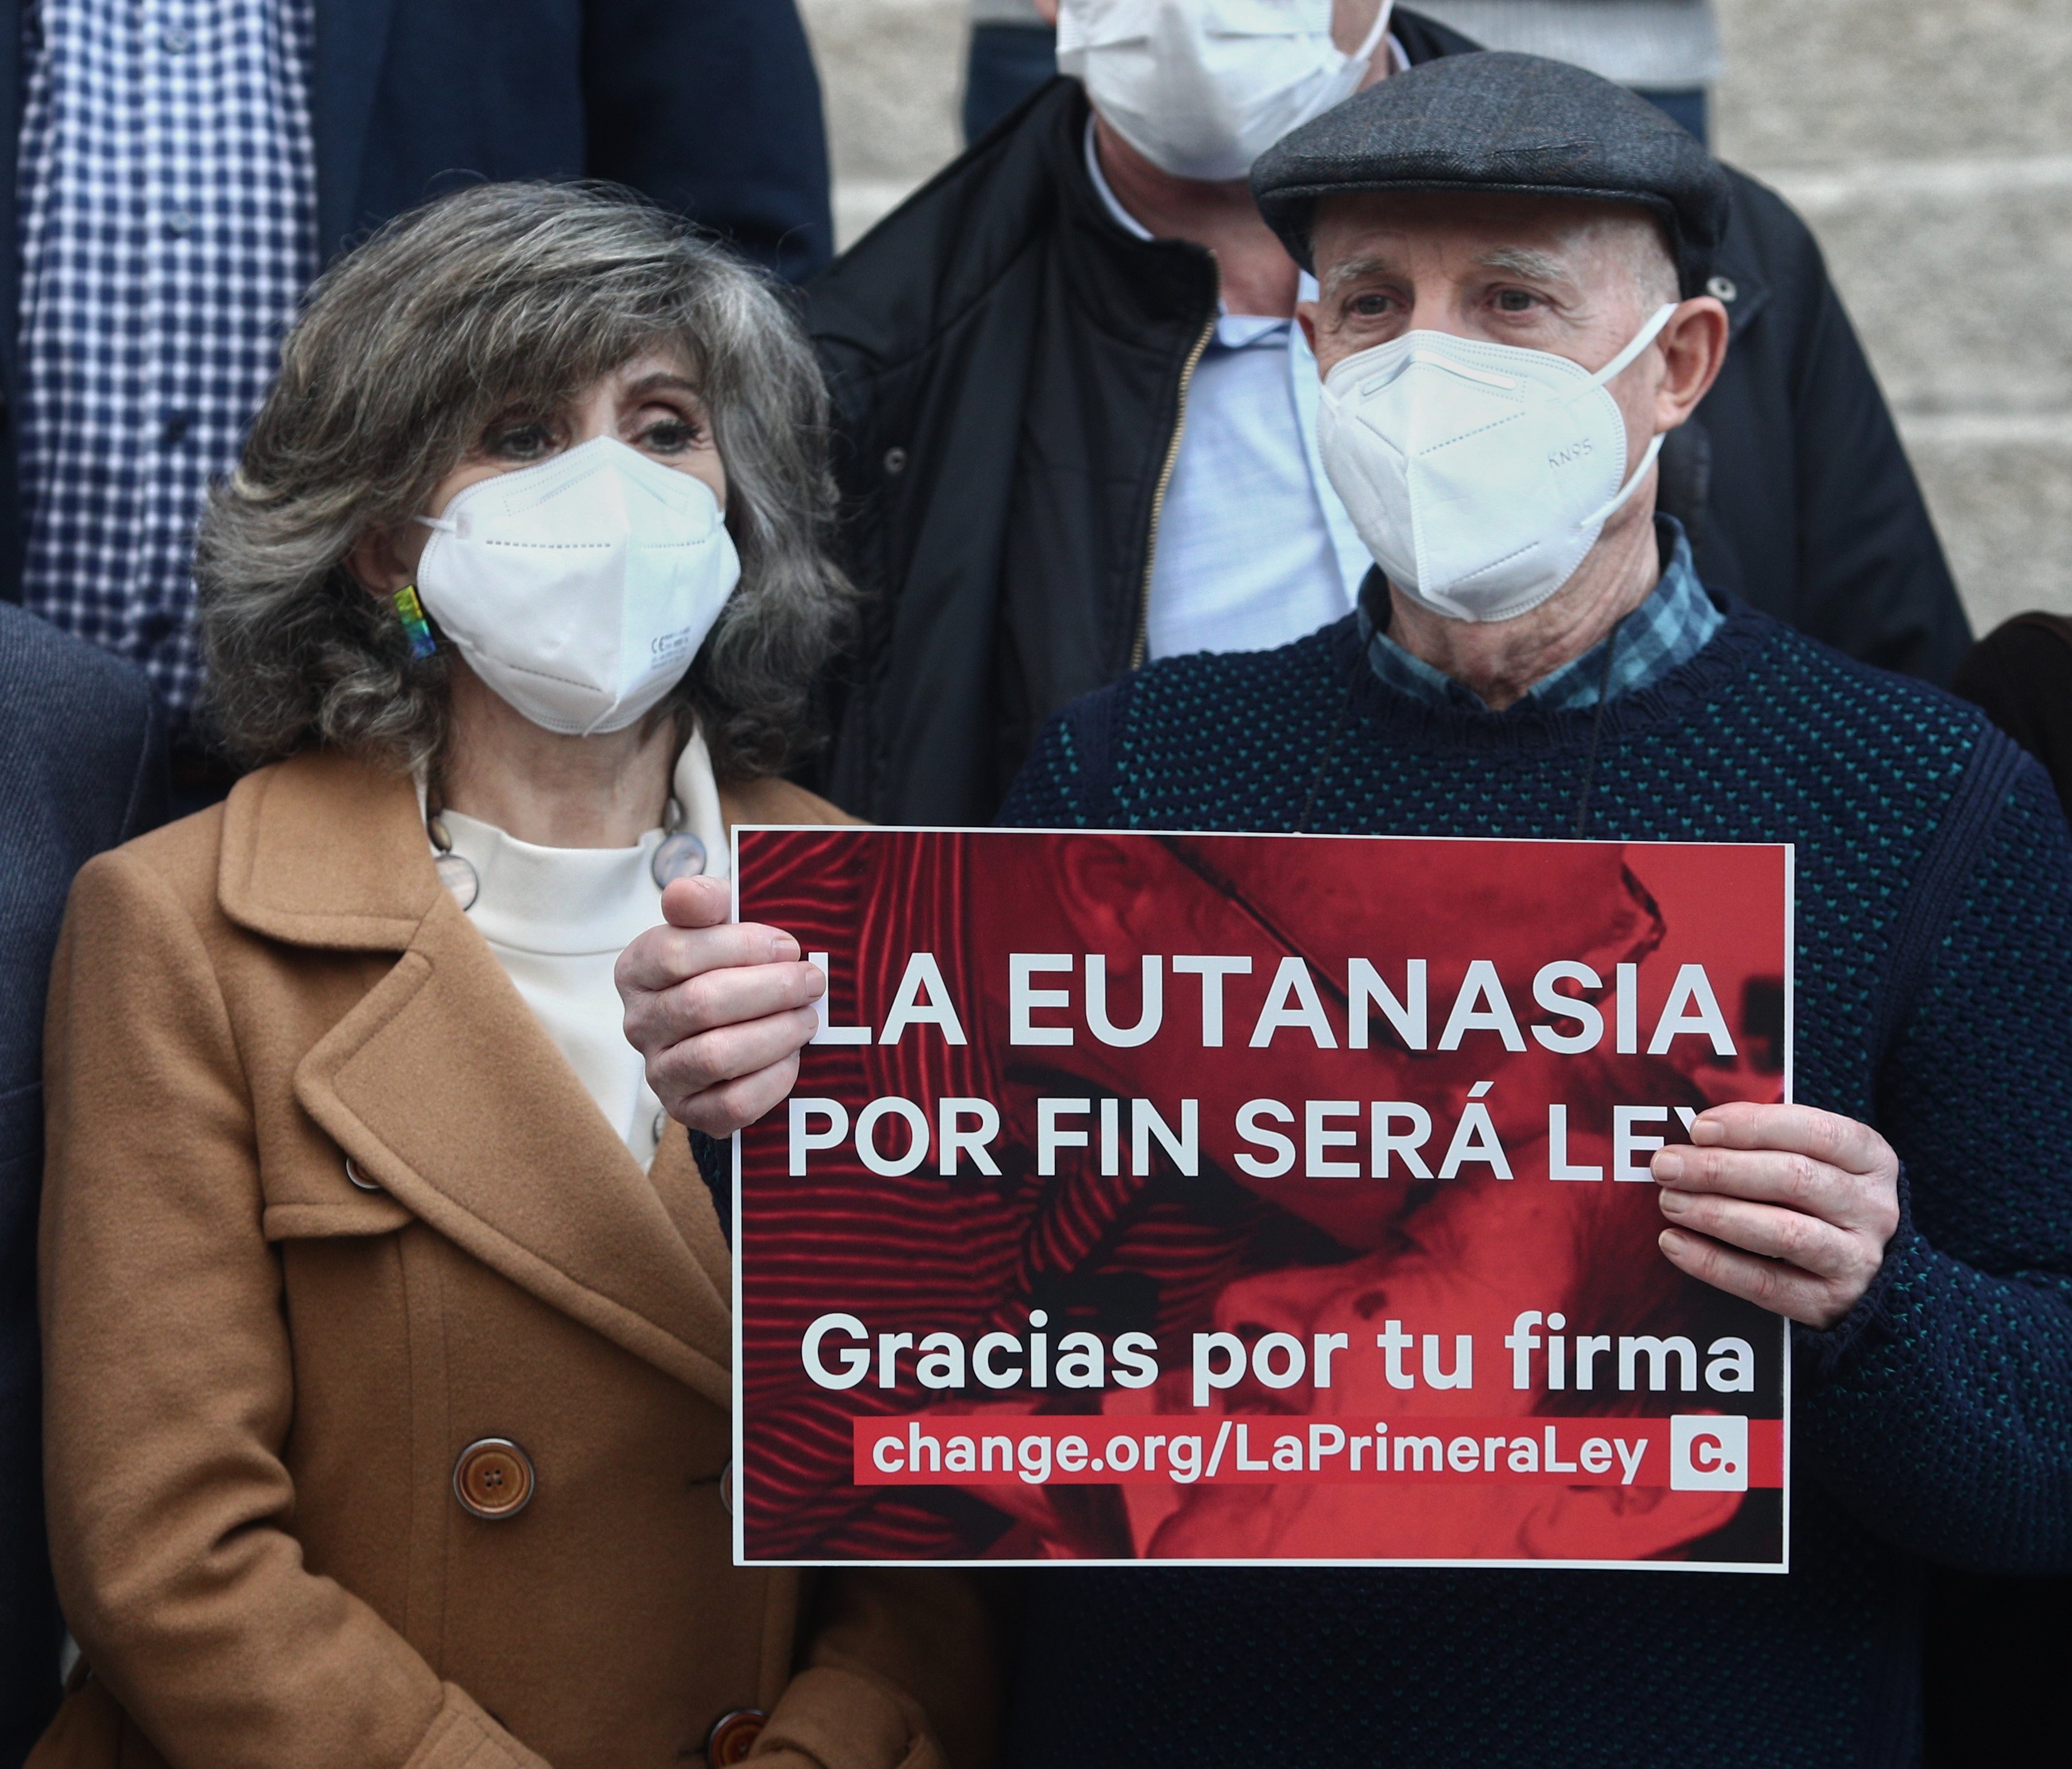 La eutanasia será legal en España: el Congreso da la luz verde definitiva